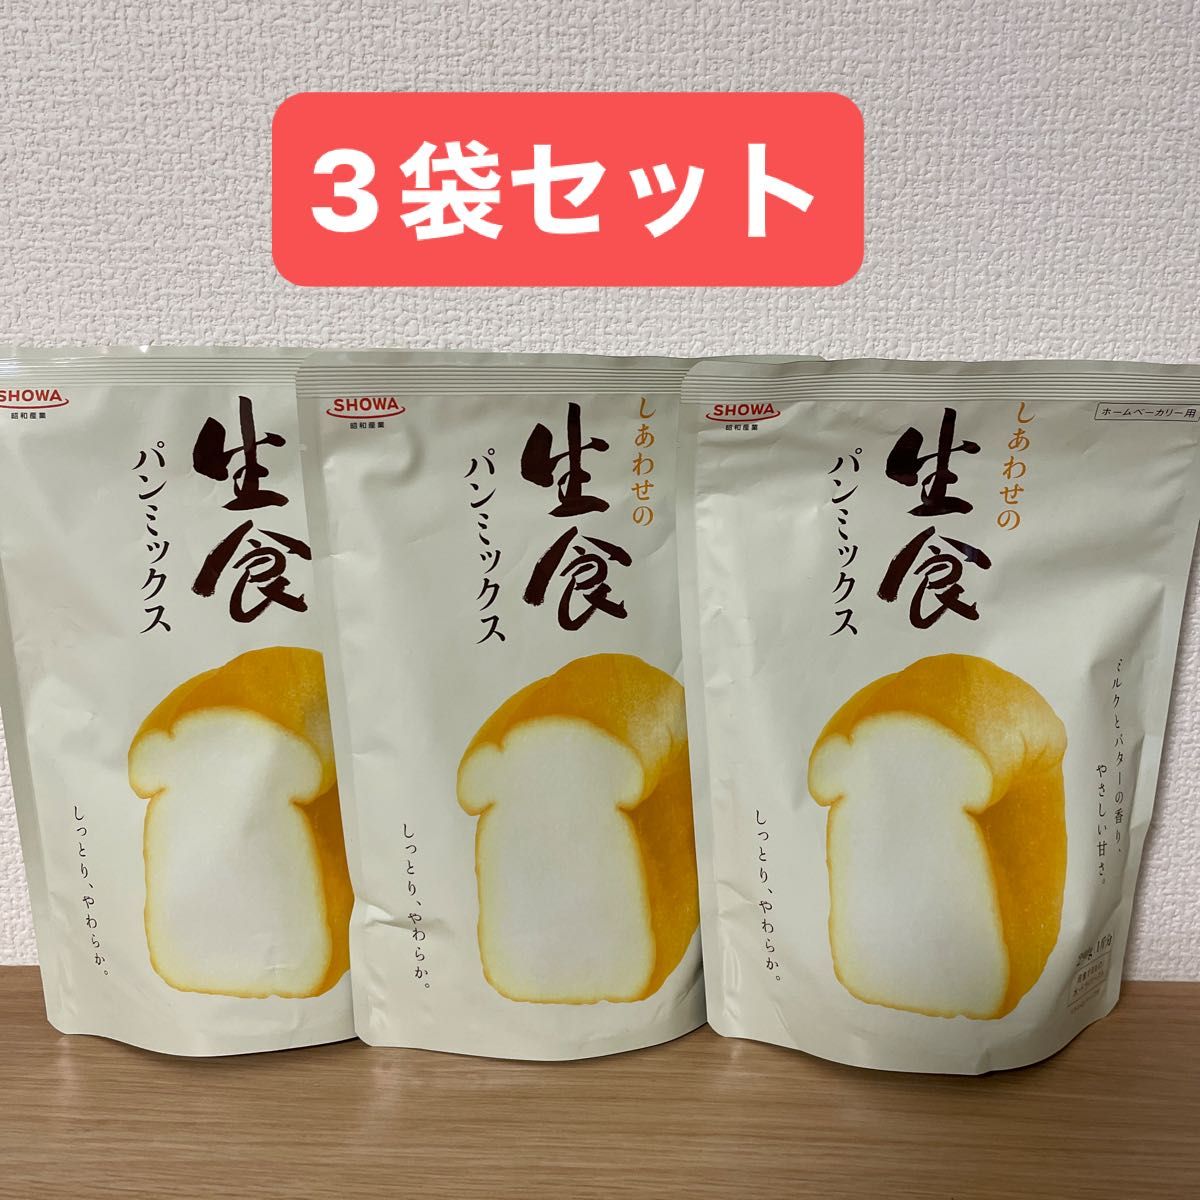 パンミックス しあわせの生食パンミックス ホームベーカリー用 290g (1斤分) × 3袋セット 昭和産業 SHOWA